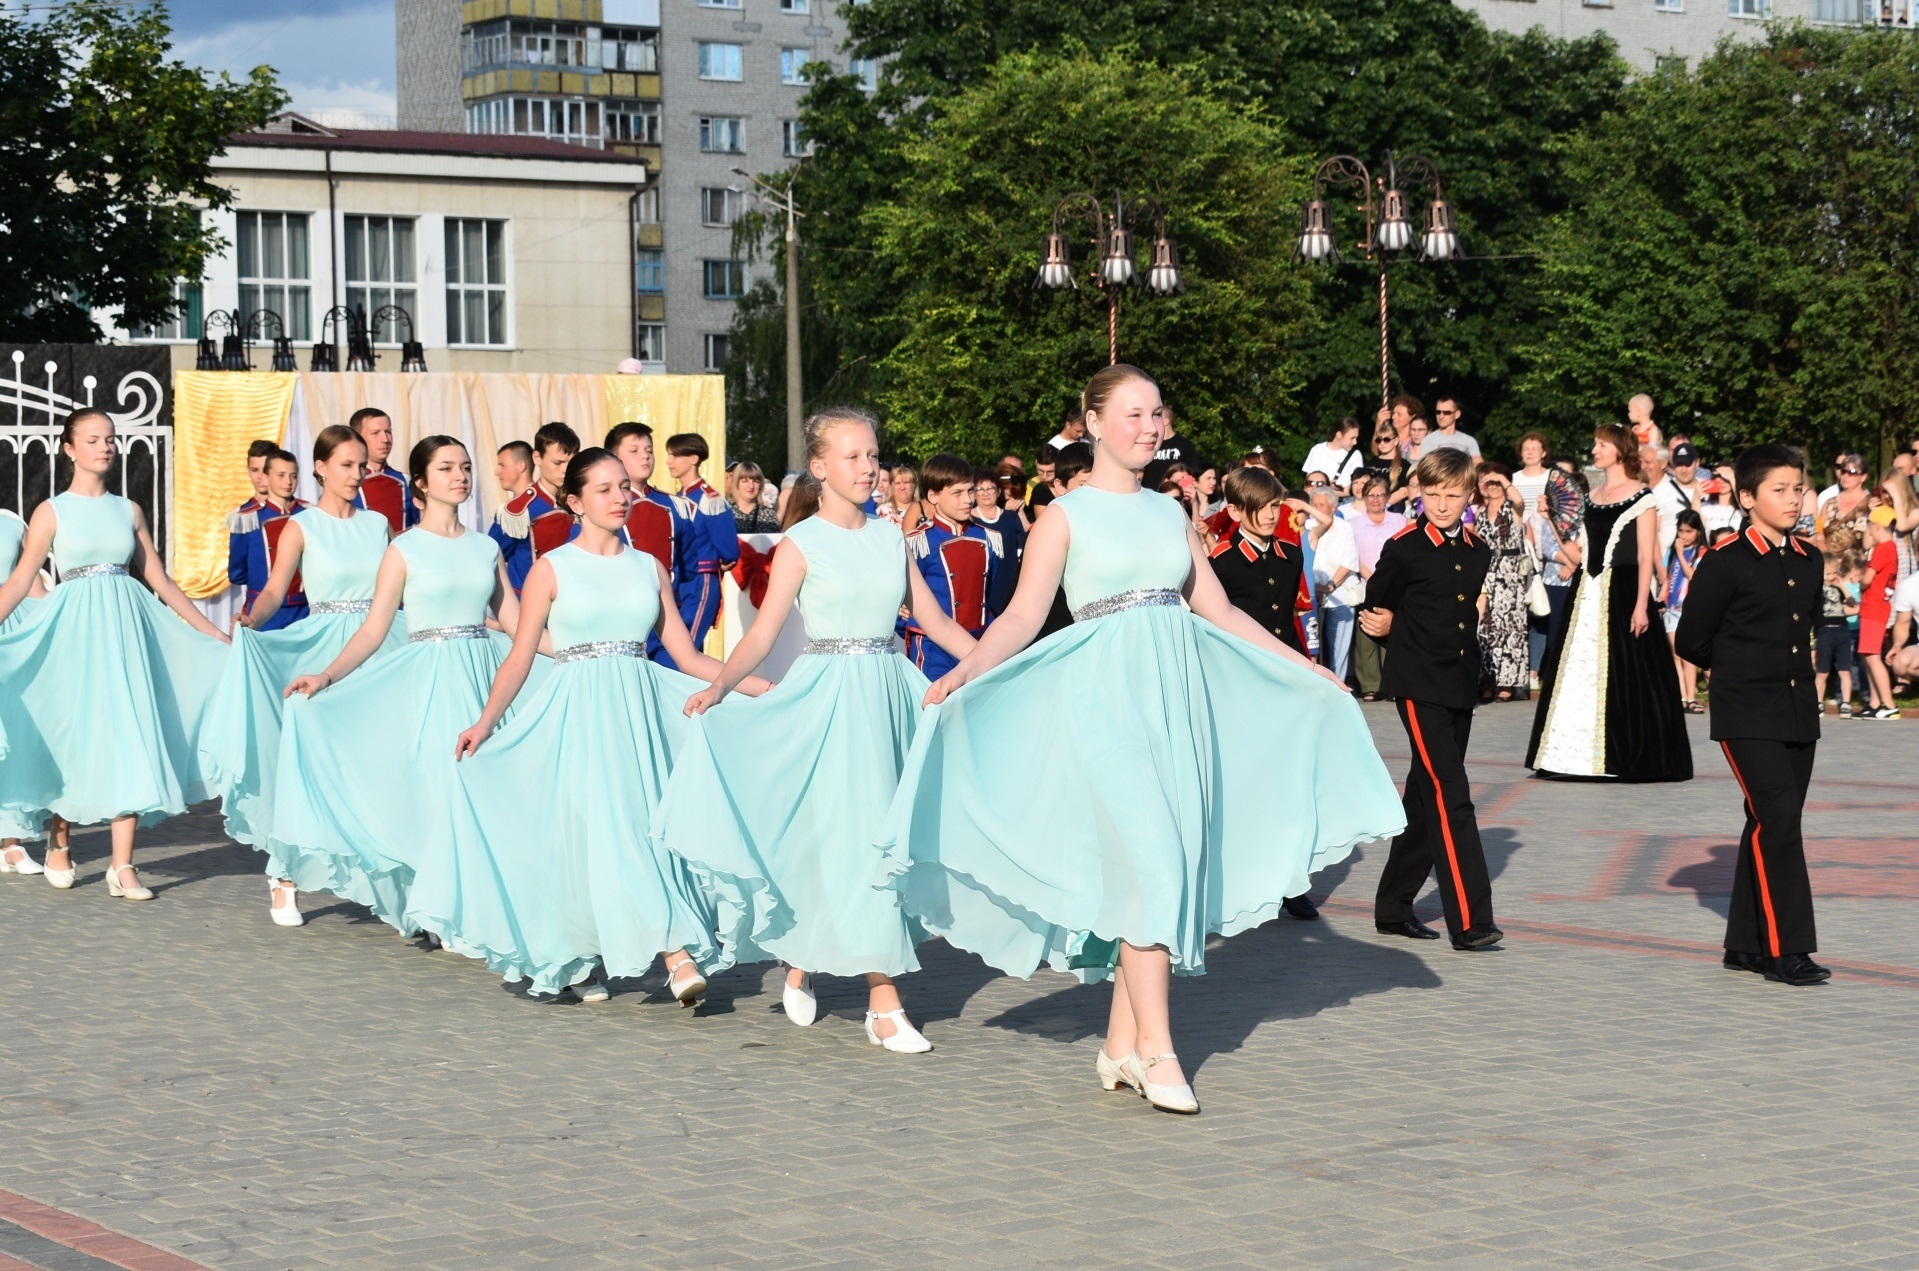 Вперше у Новоград-Волинській міській ТГ відбувся мистецький захід “Звягельський бал”